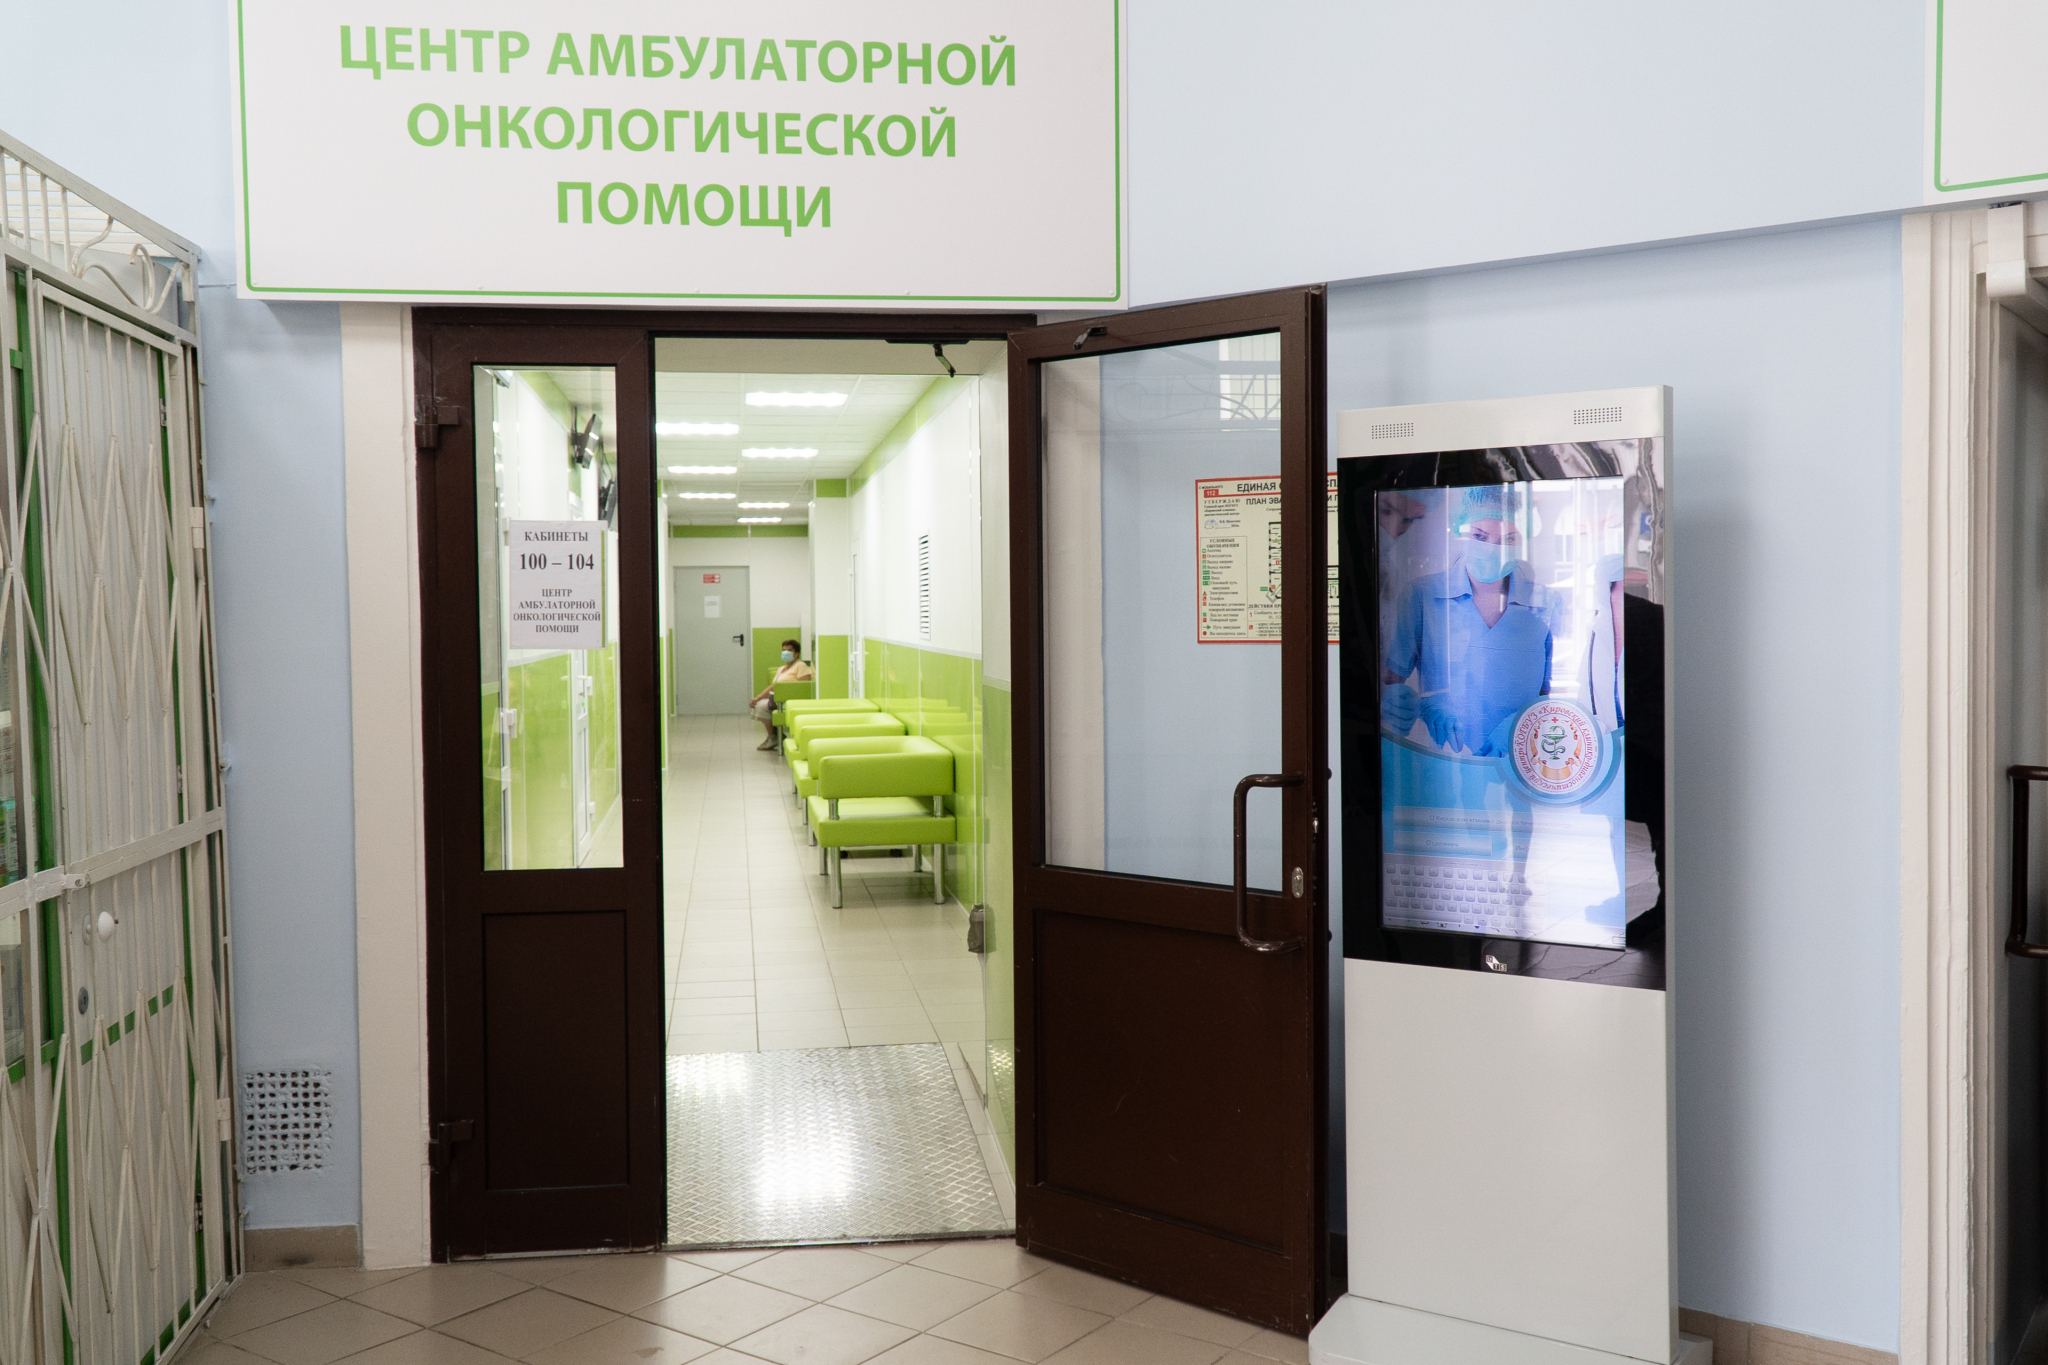 За месяц в Центр амбулаторной онкологической помощи обратились более 1000 кировчан